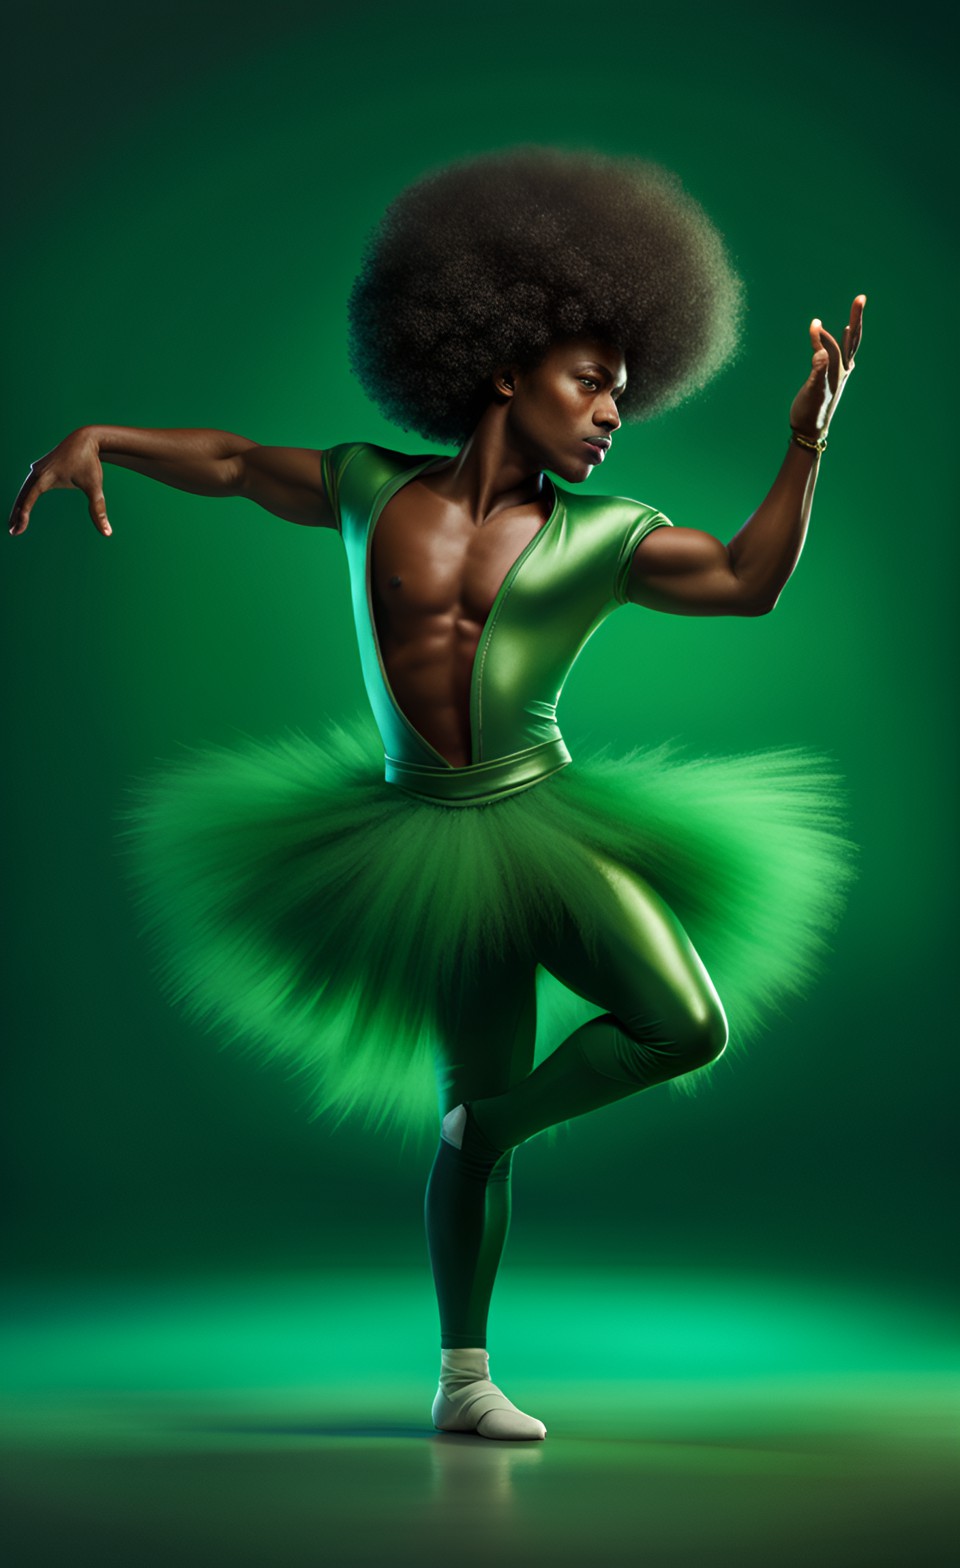 Jamaican magical ballet dancer Jamai221